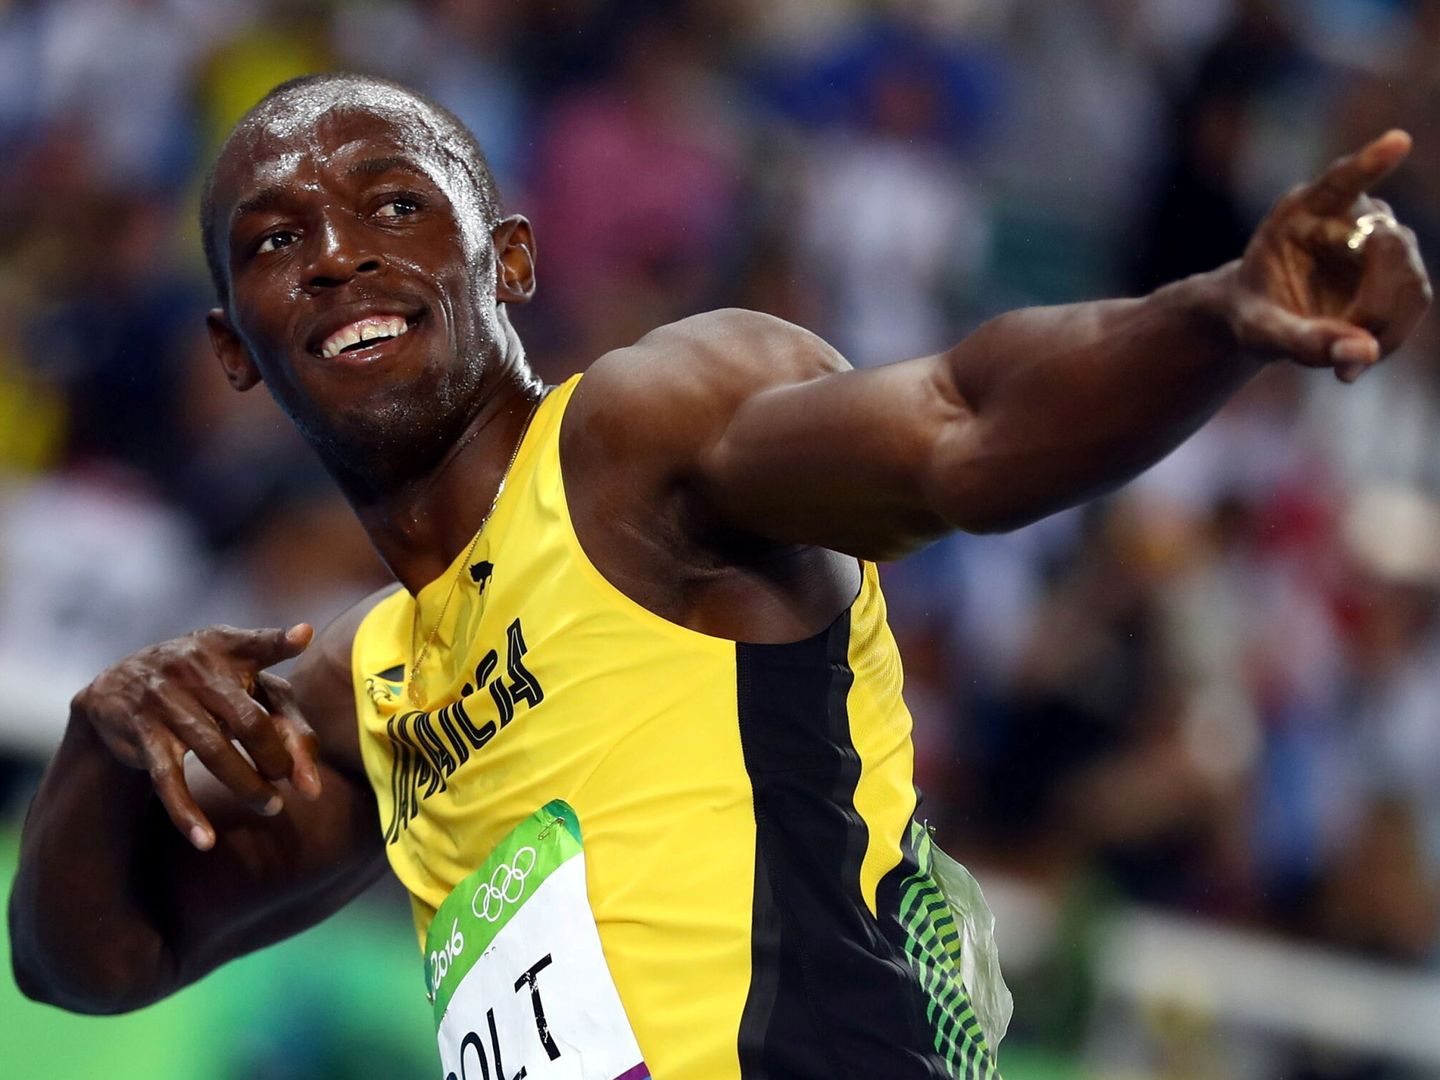 El atleta Usain Bolt. (Reuters)